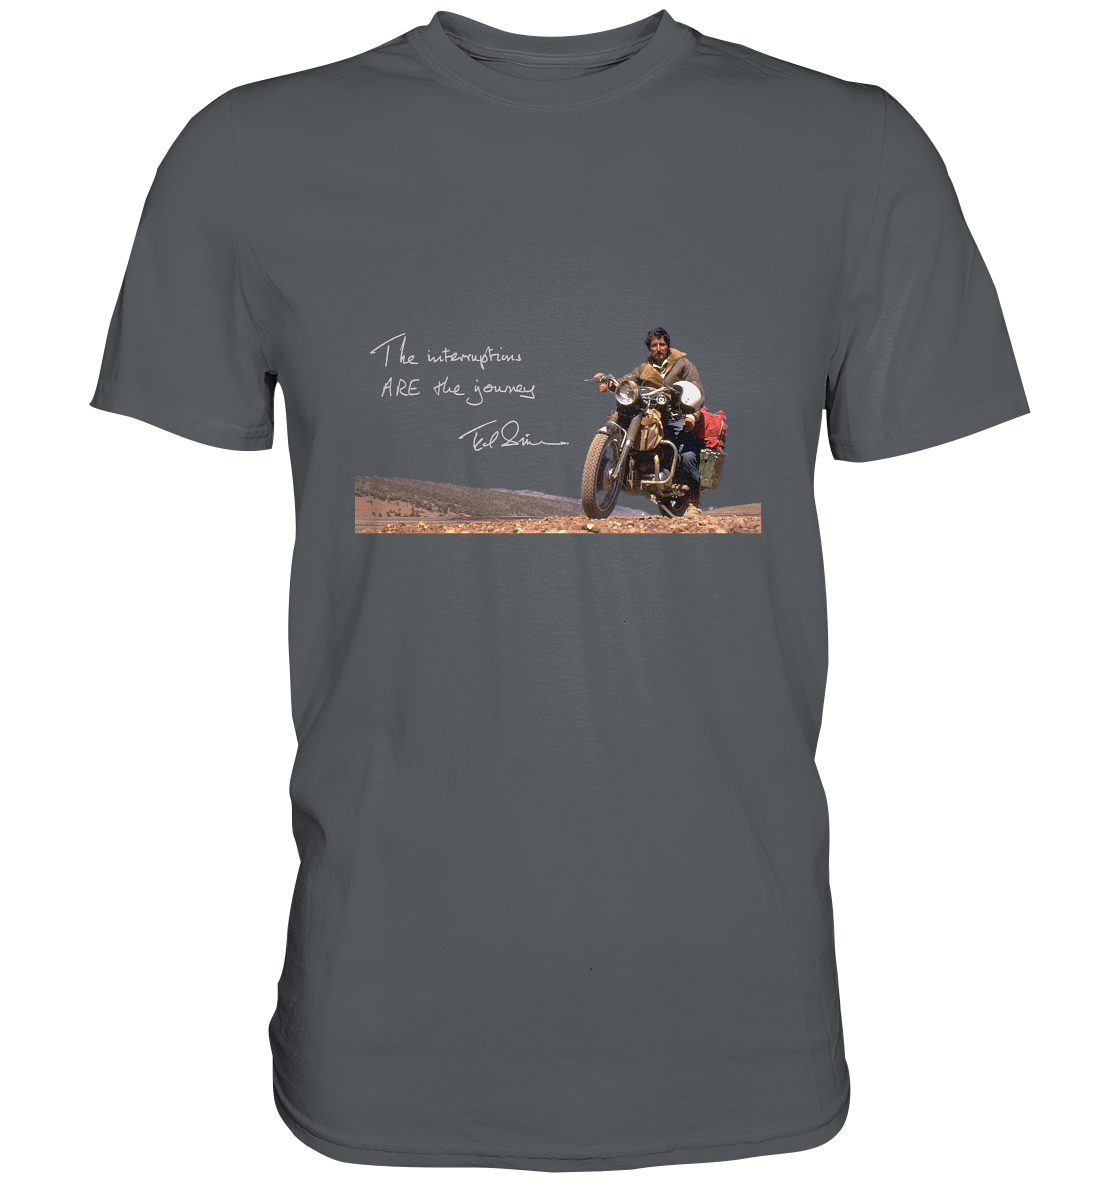 T-Shirt, Herren, men, Ted Simon auf seinem Motorrad, on his motorbike, Jupitalia mit handschriftlichem Zitat, with handwritten quote "The Interruptions are the journey."  grau, grey